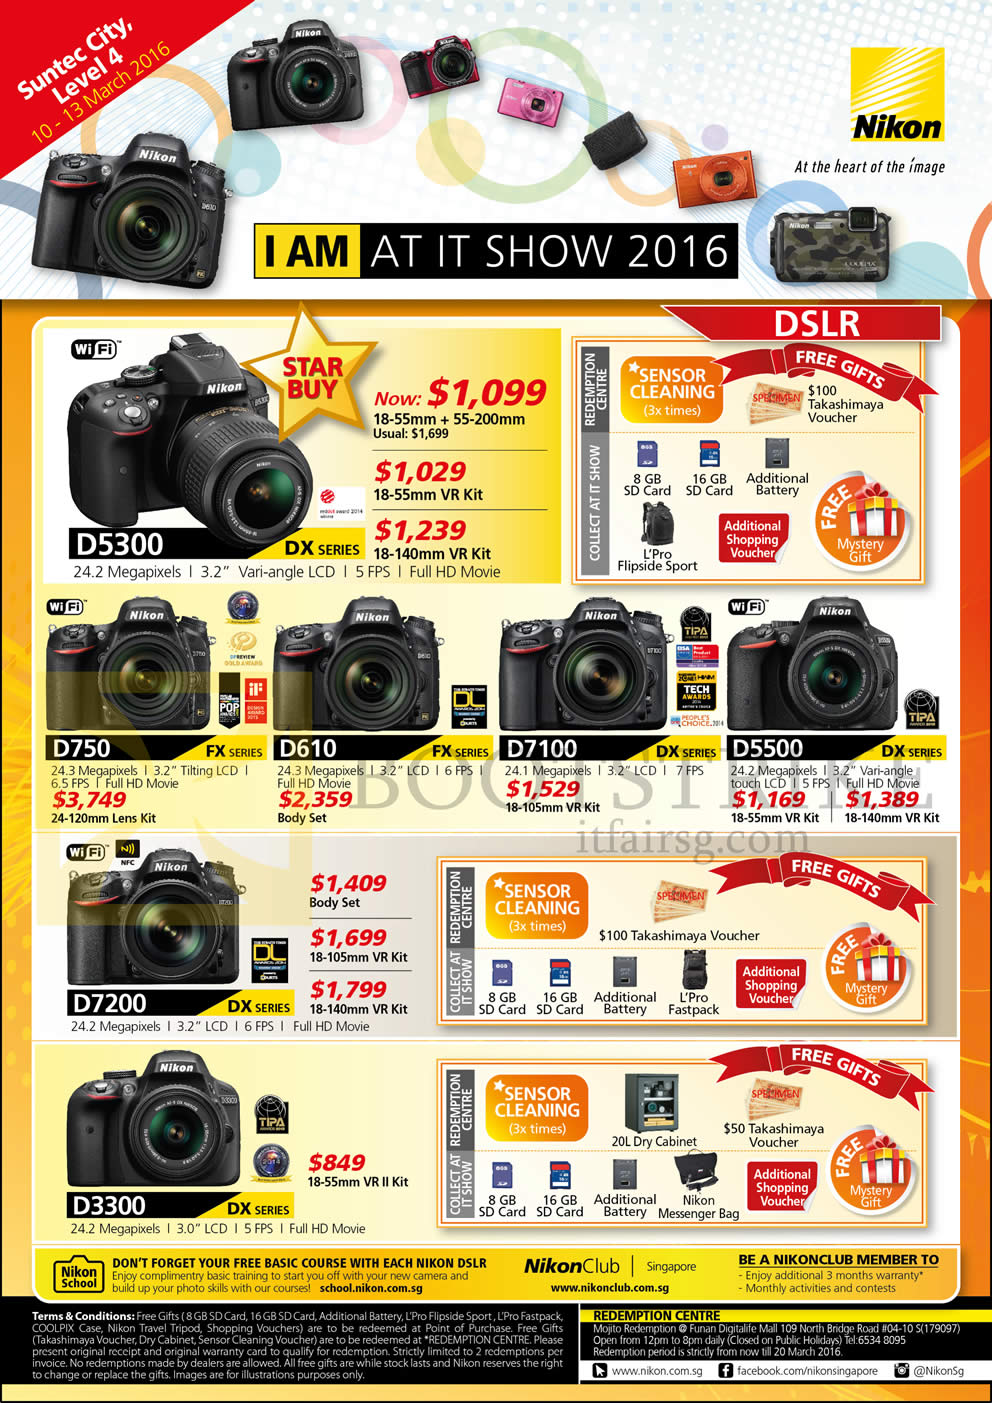 IT SHOW 2016 price list image brochure of Nikon Digital Cameras DSLR D5300, D750, D610, D7100, D5500, D7200, D3300